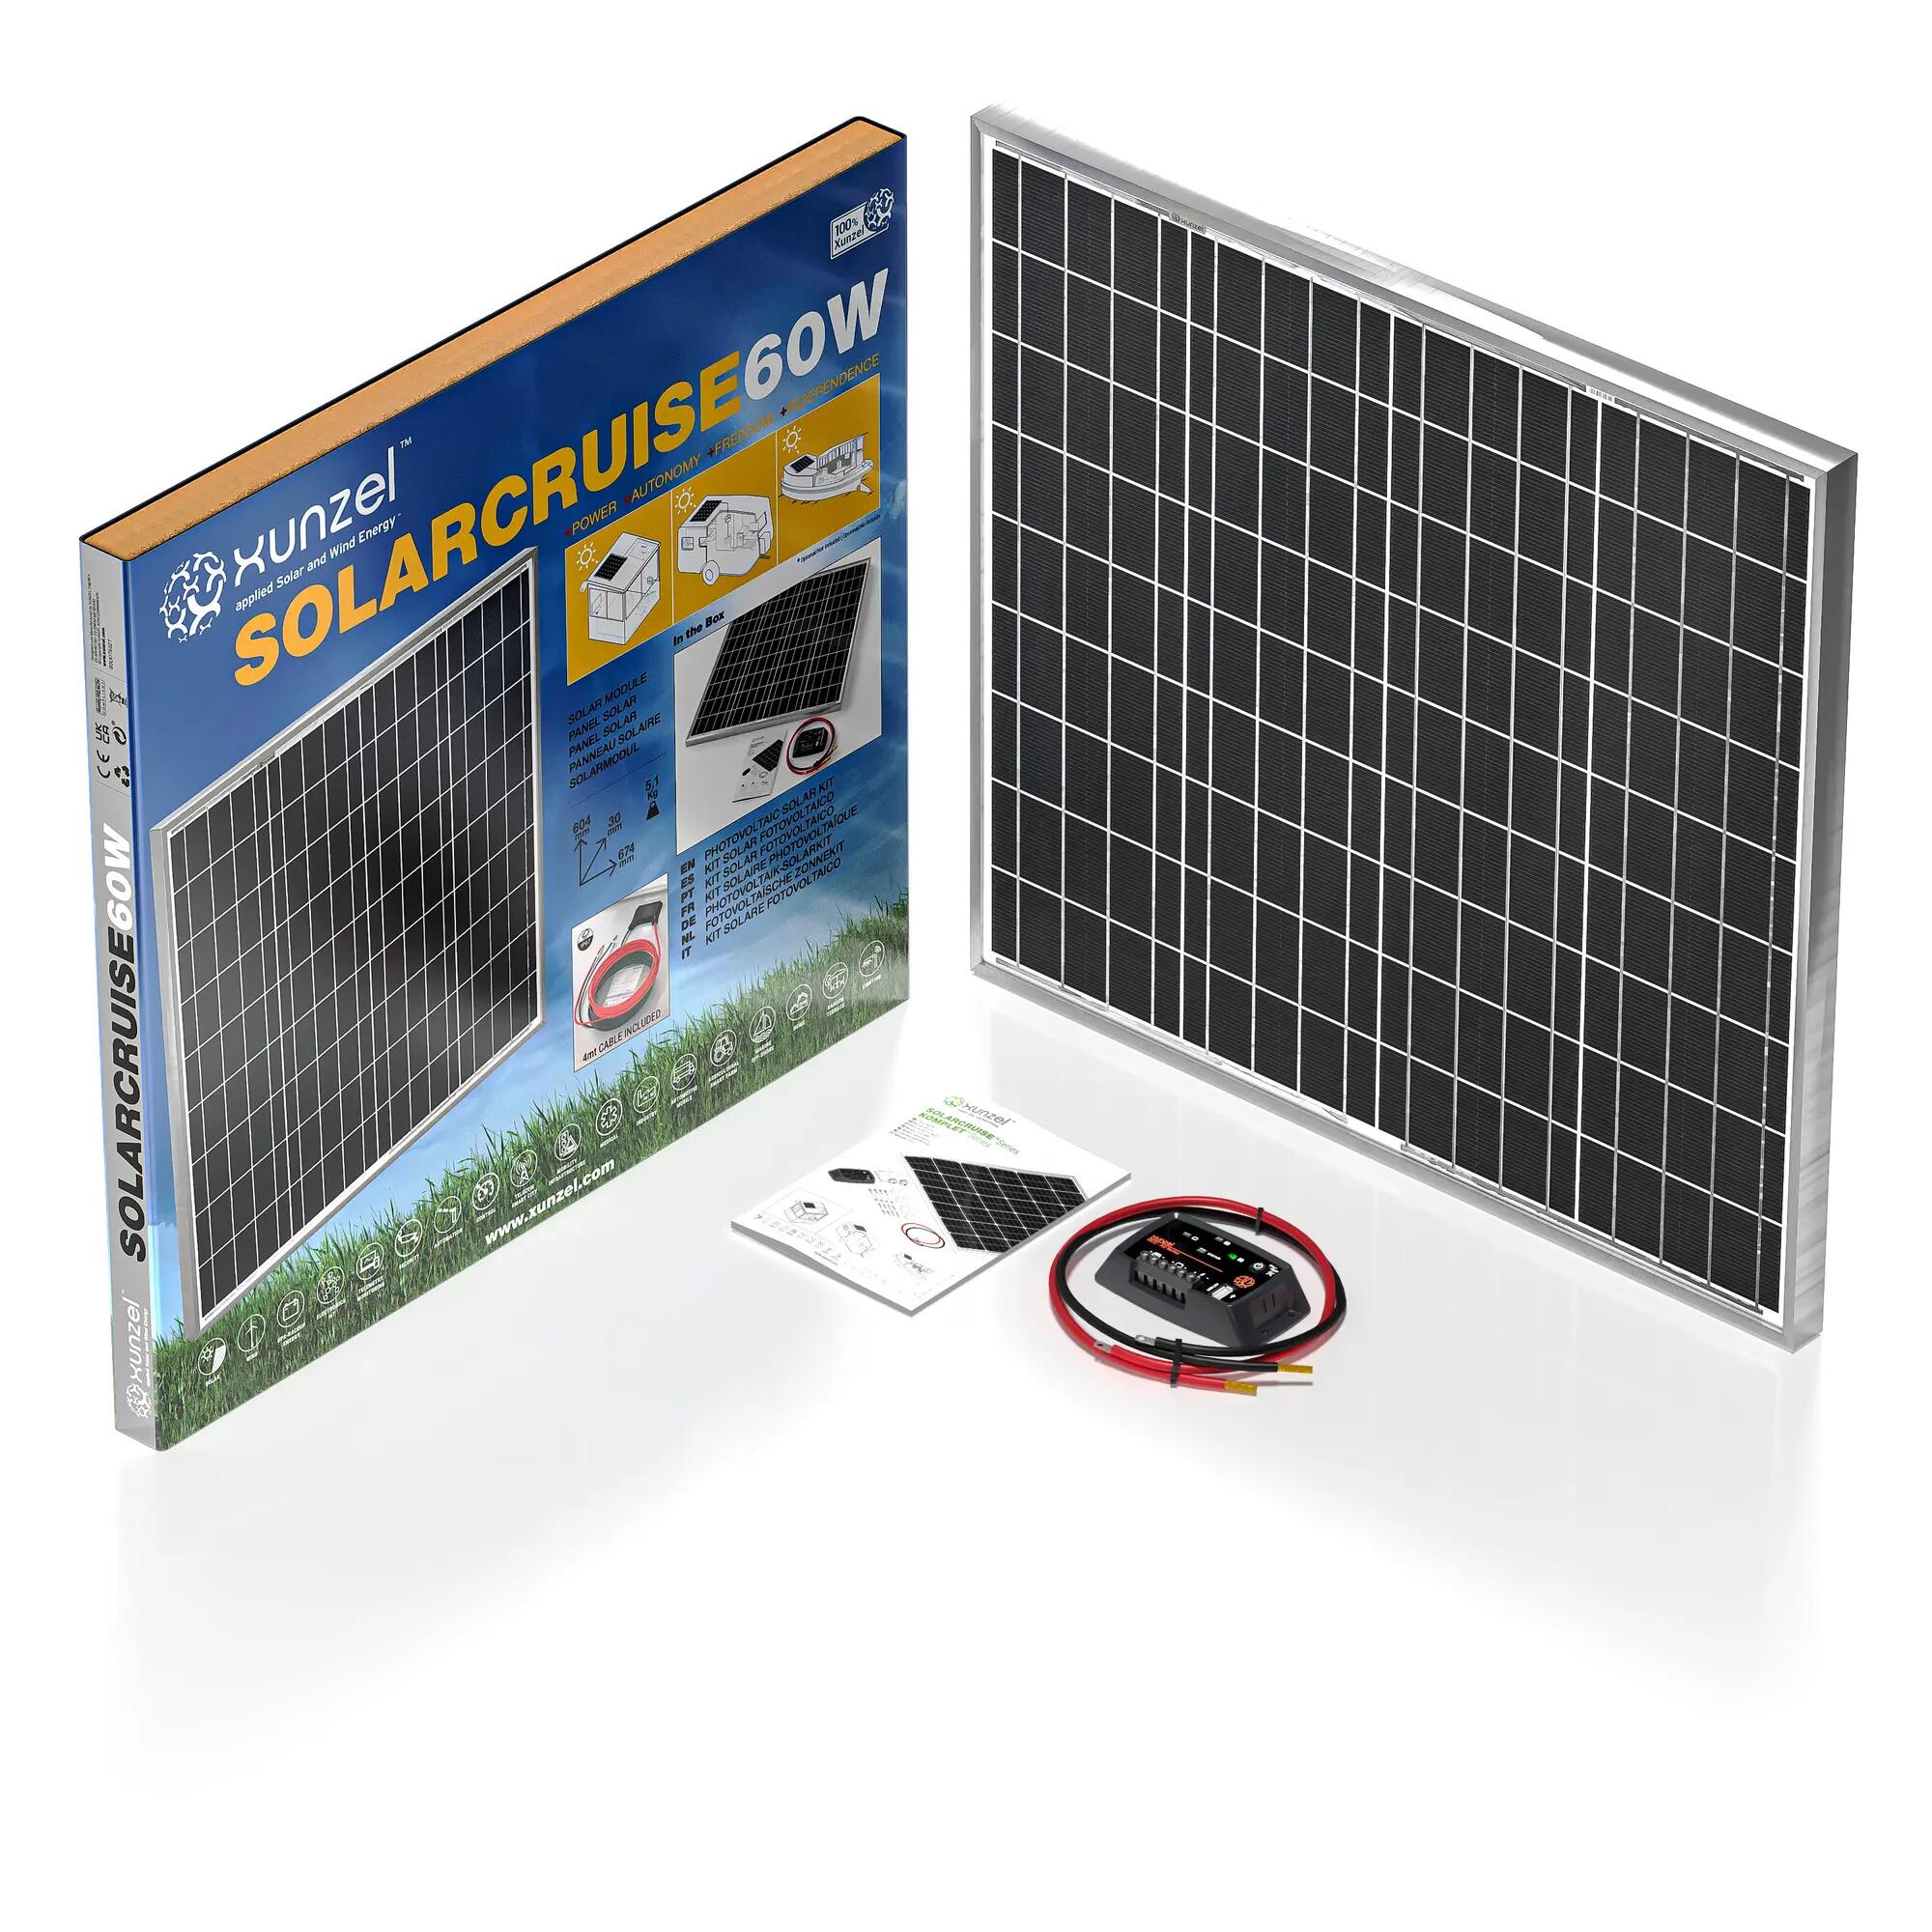 col china temor Remo Kit Solar fotovoltaico para carga de batería SOLARCRUISE-XUNZEL-60W-12V |  Leroy Merlin